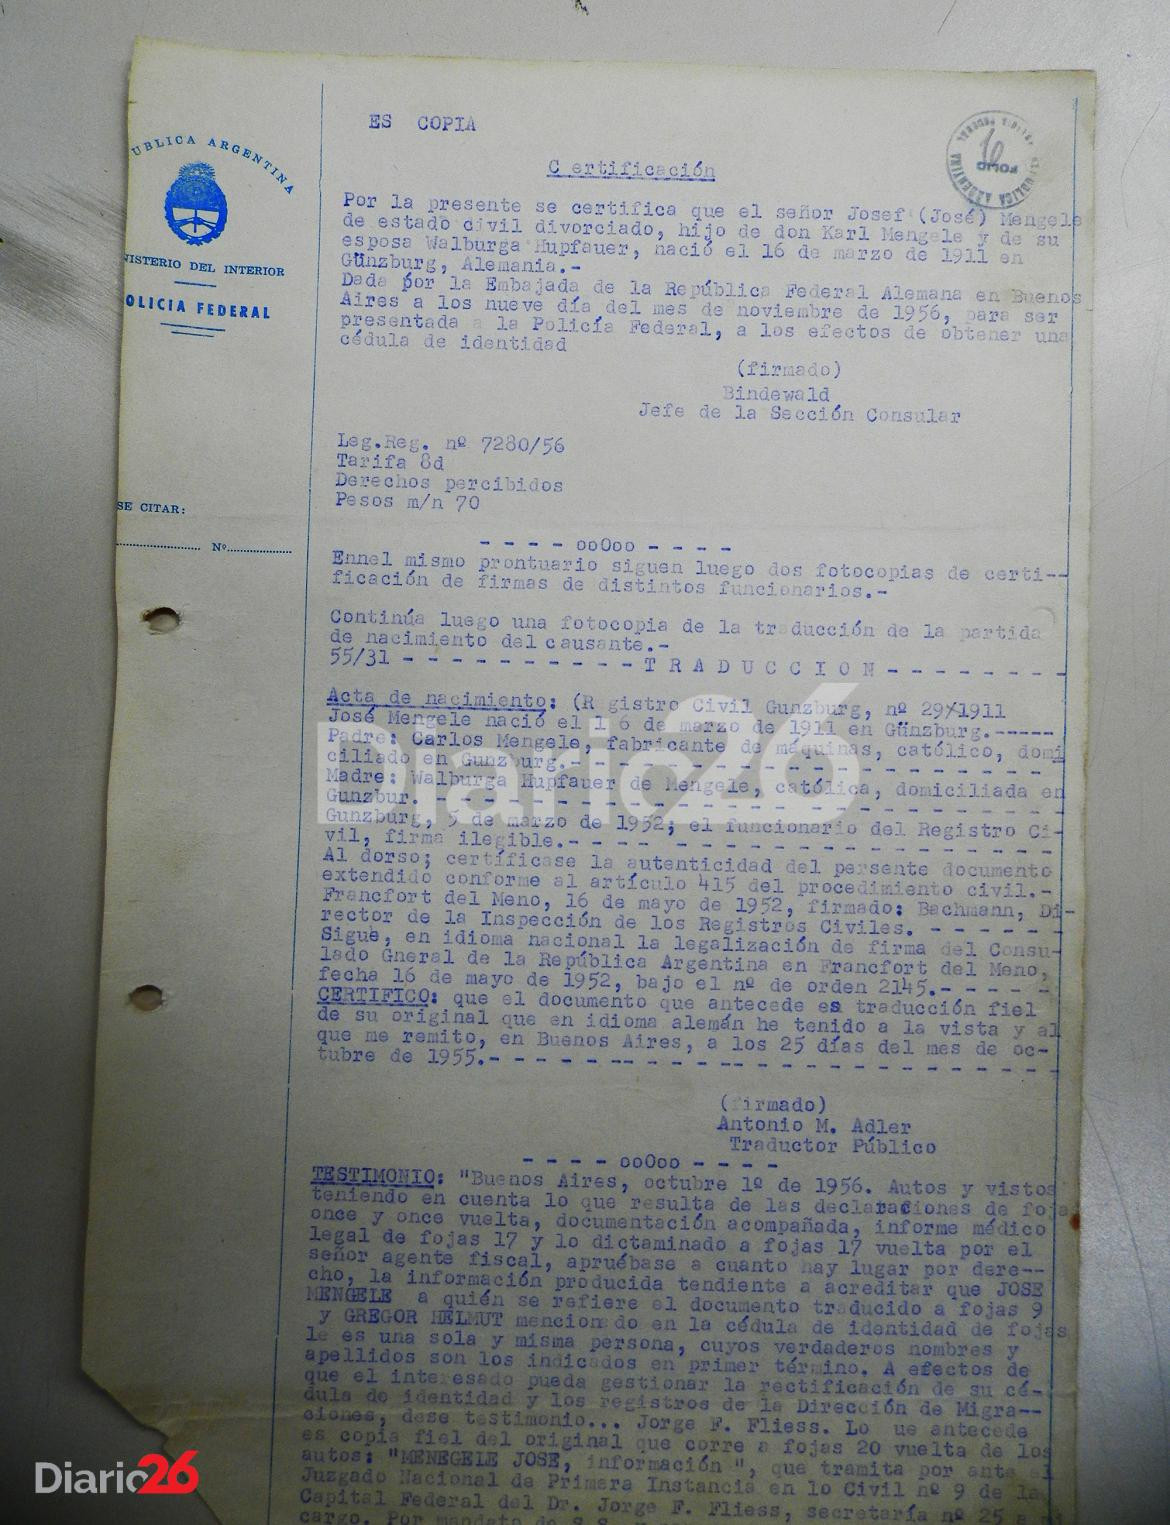 Certificación del pedido de recuperación de verdadera identidad de Josef Mengele en Argentina. Año 1956